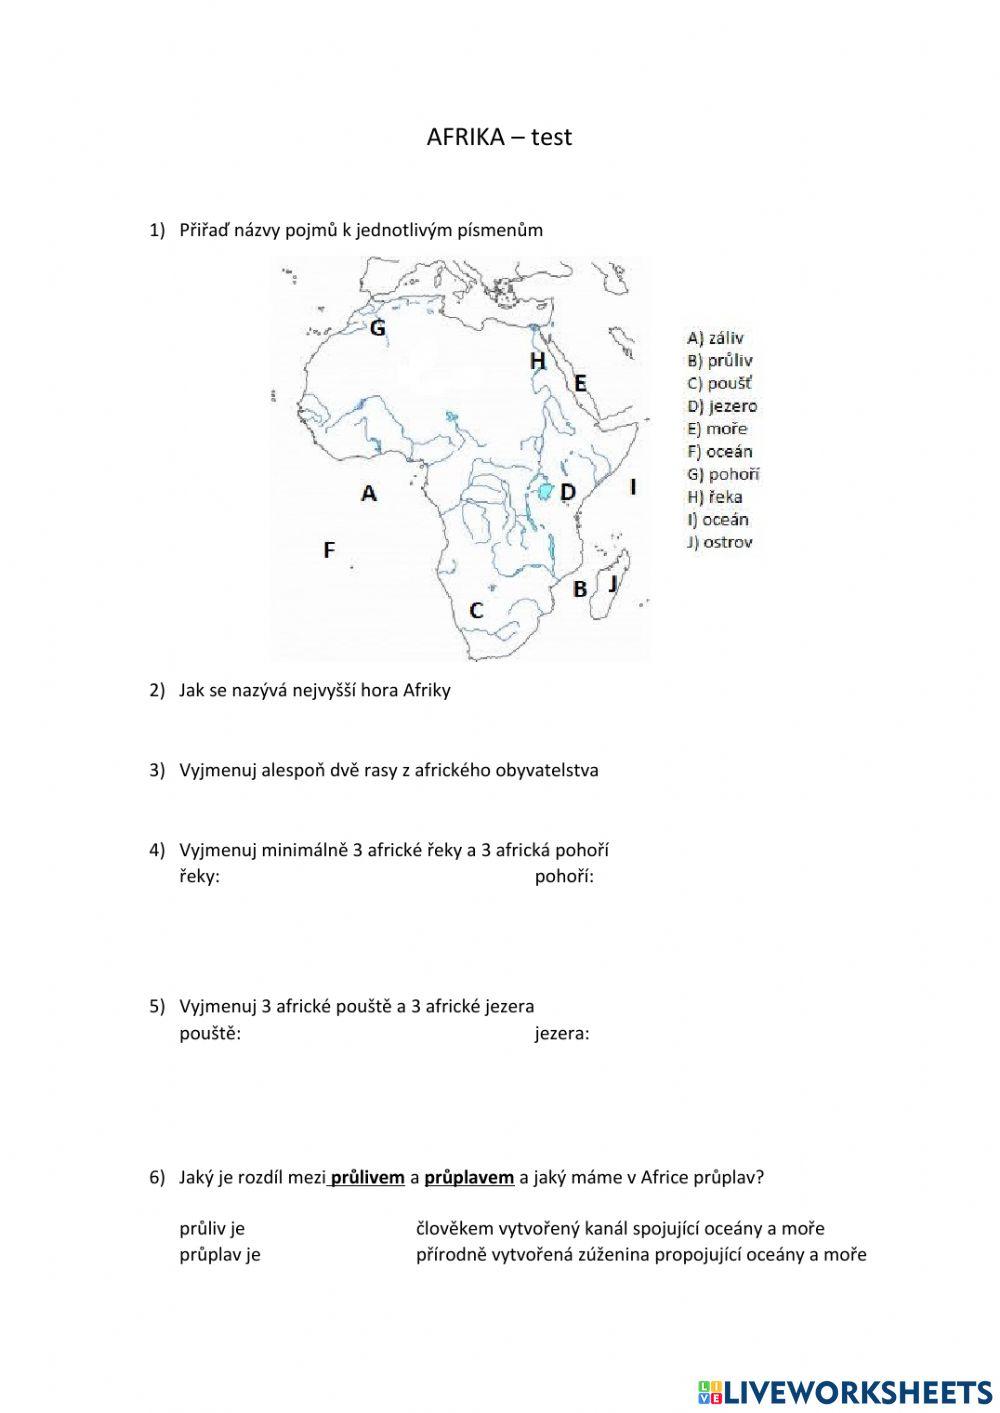 Afrika test worksheet | Live Worksheets